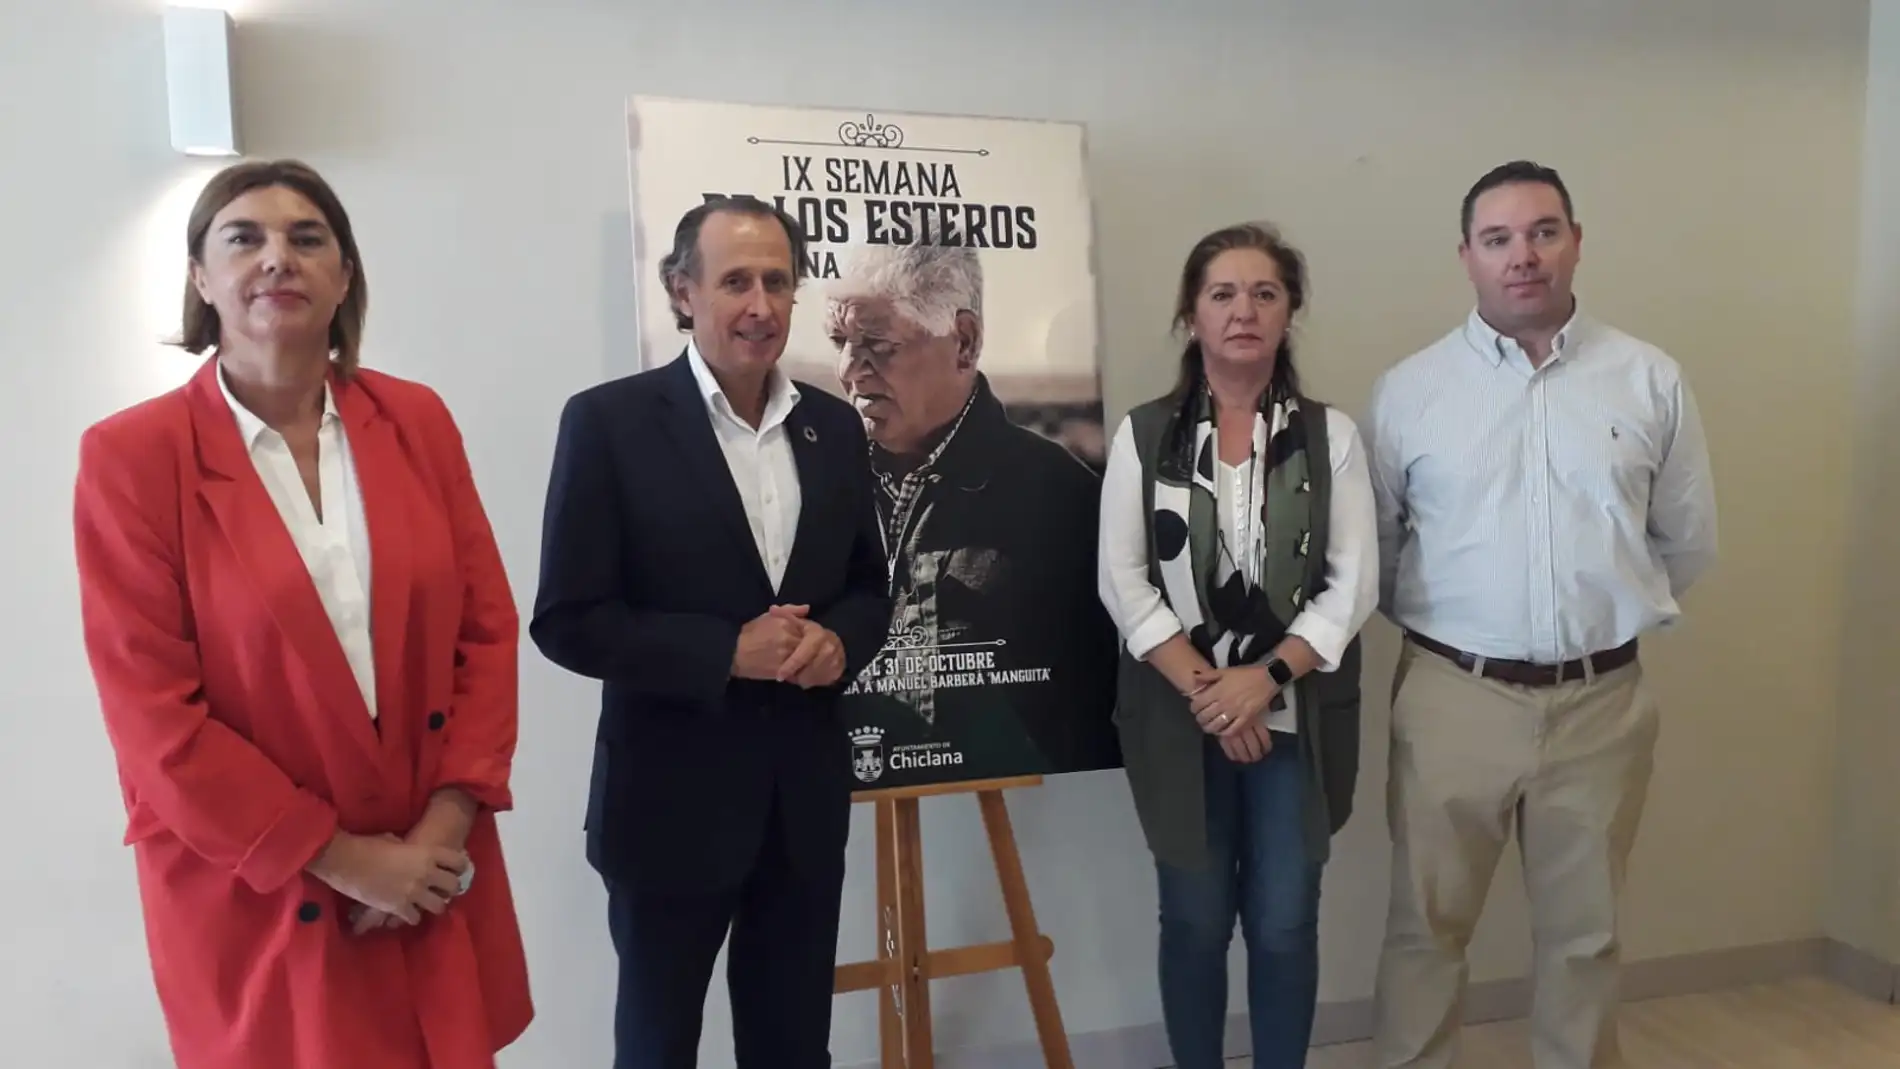 Presentación de la semana de los Esteros en Chiclana con el alcalde, José María Román